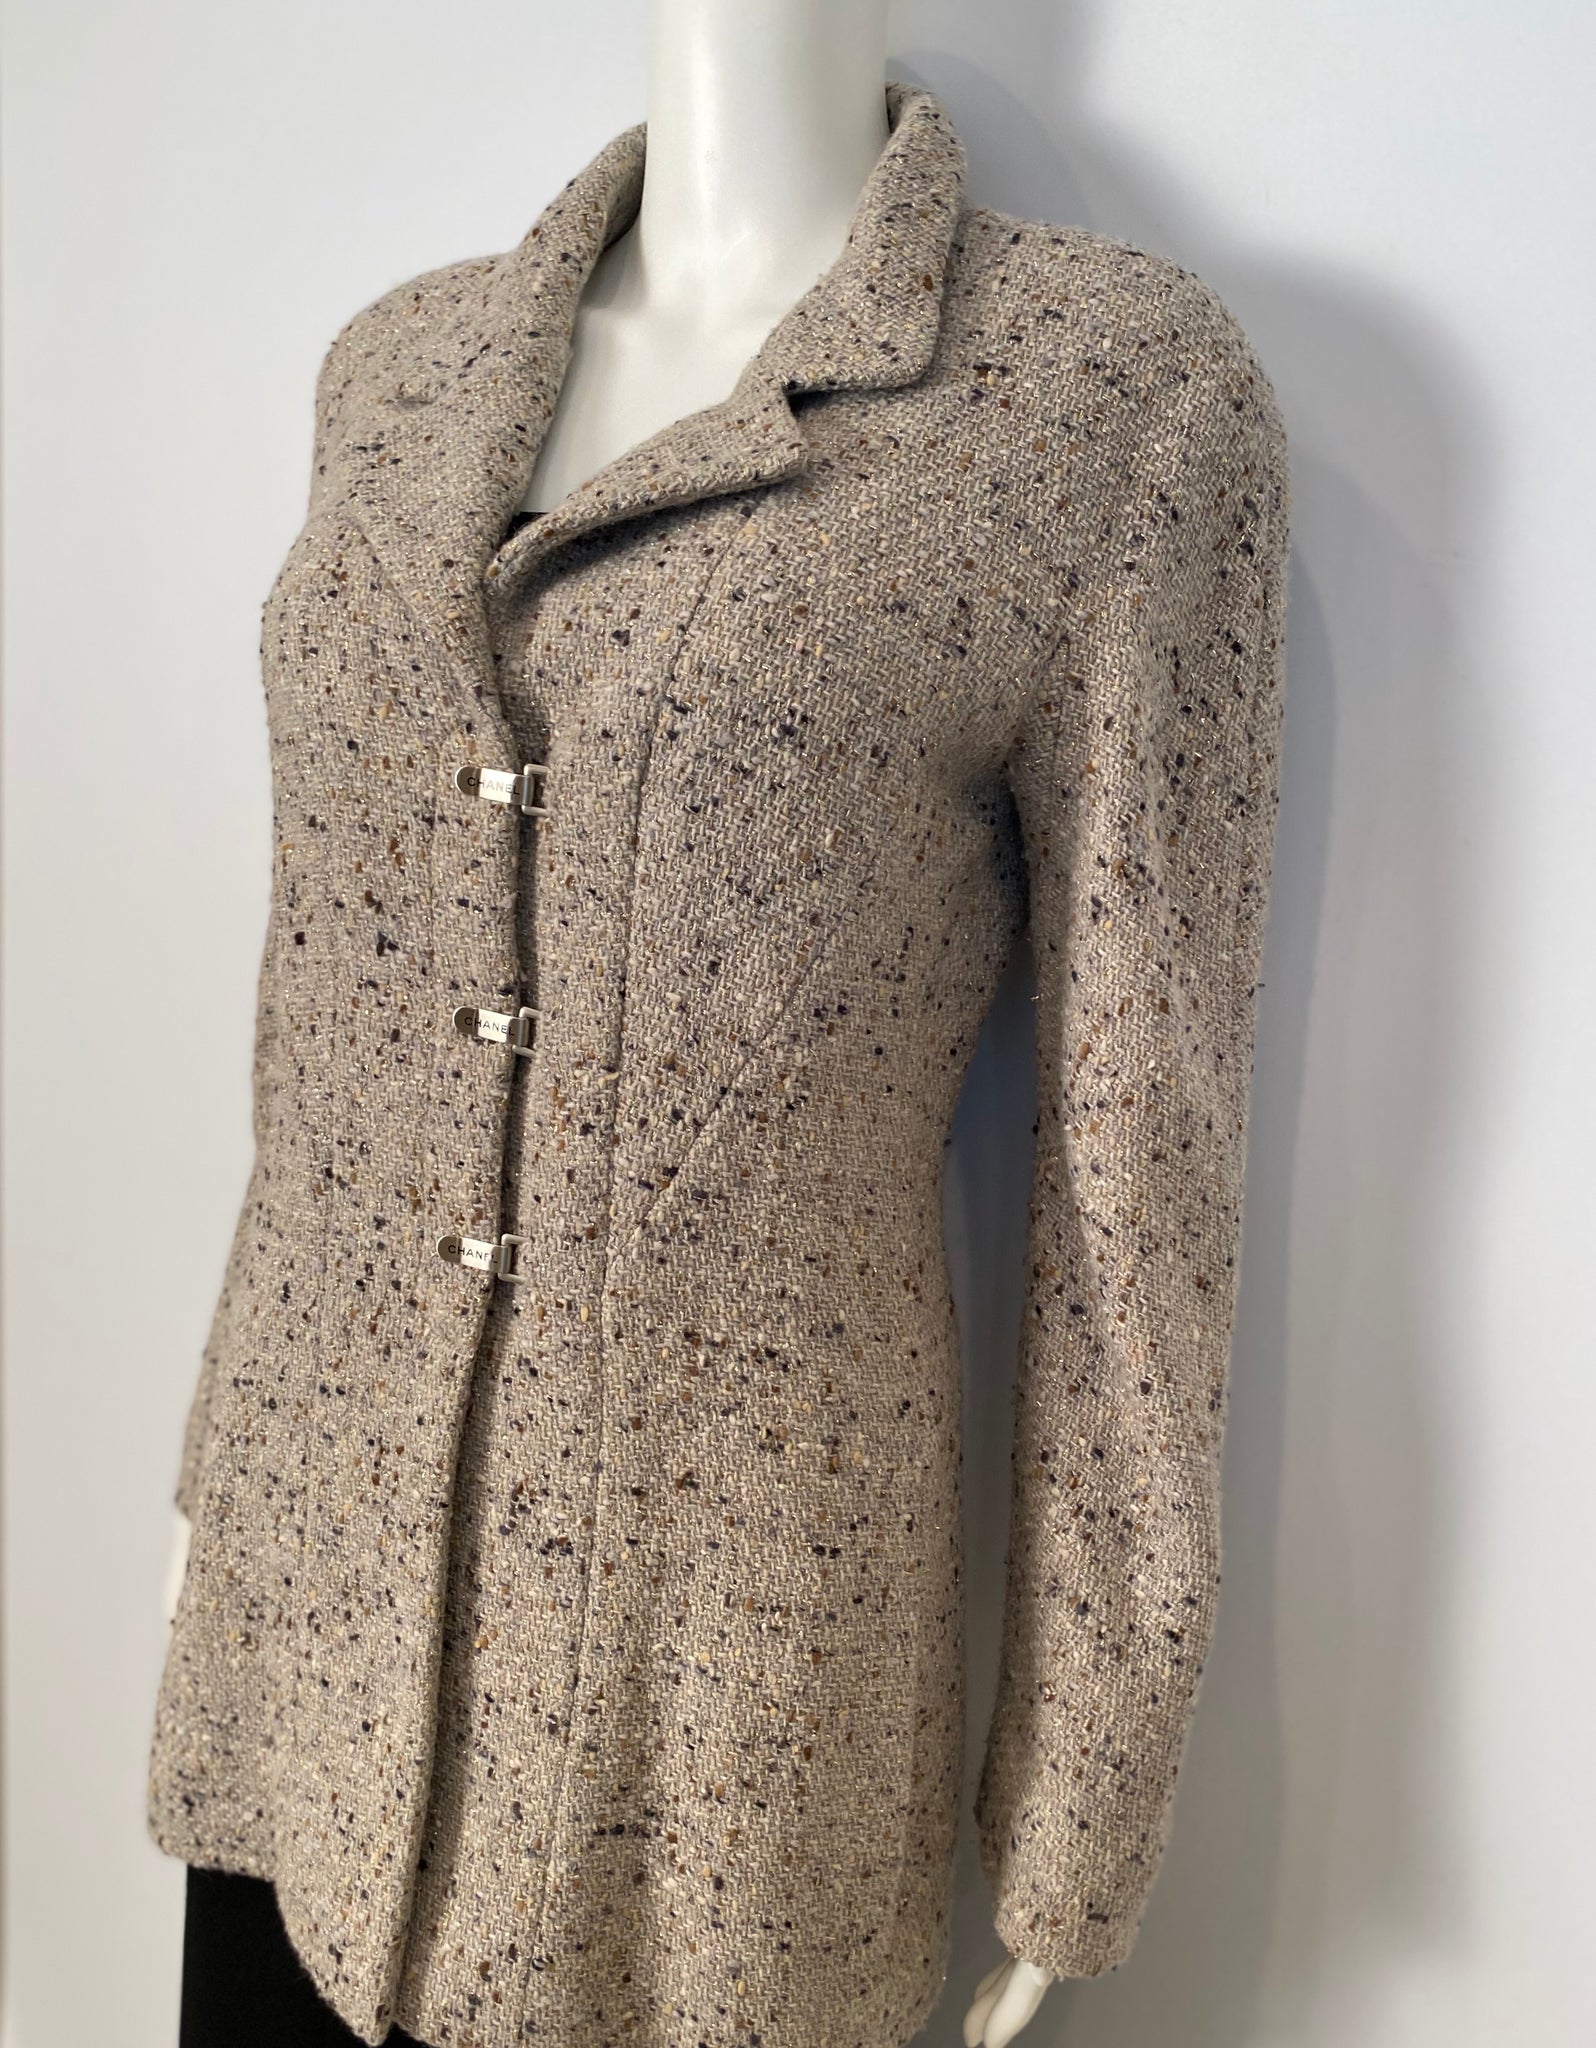 HelensChanel Chanel Vintage 99A, 1999 Fall Brown Tweed Long Jacket Subtle Sparkle FR 40 US 6/8